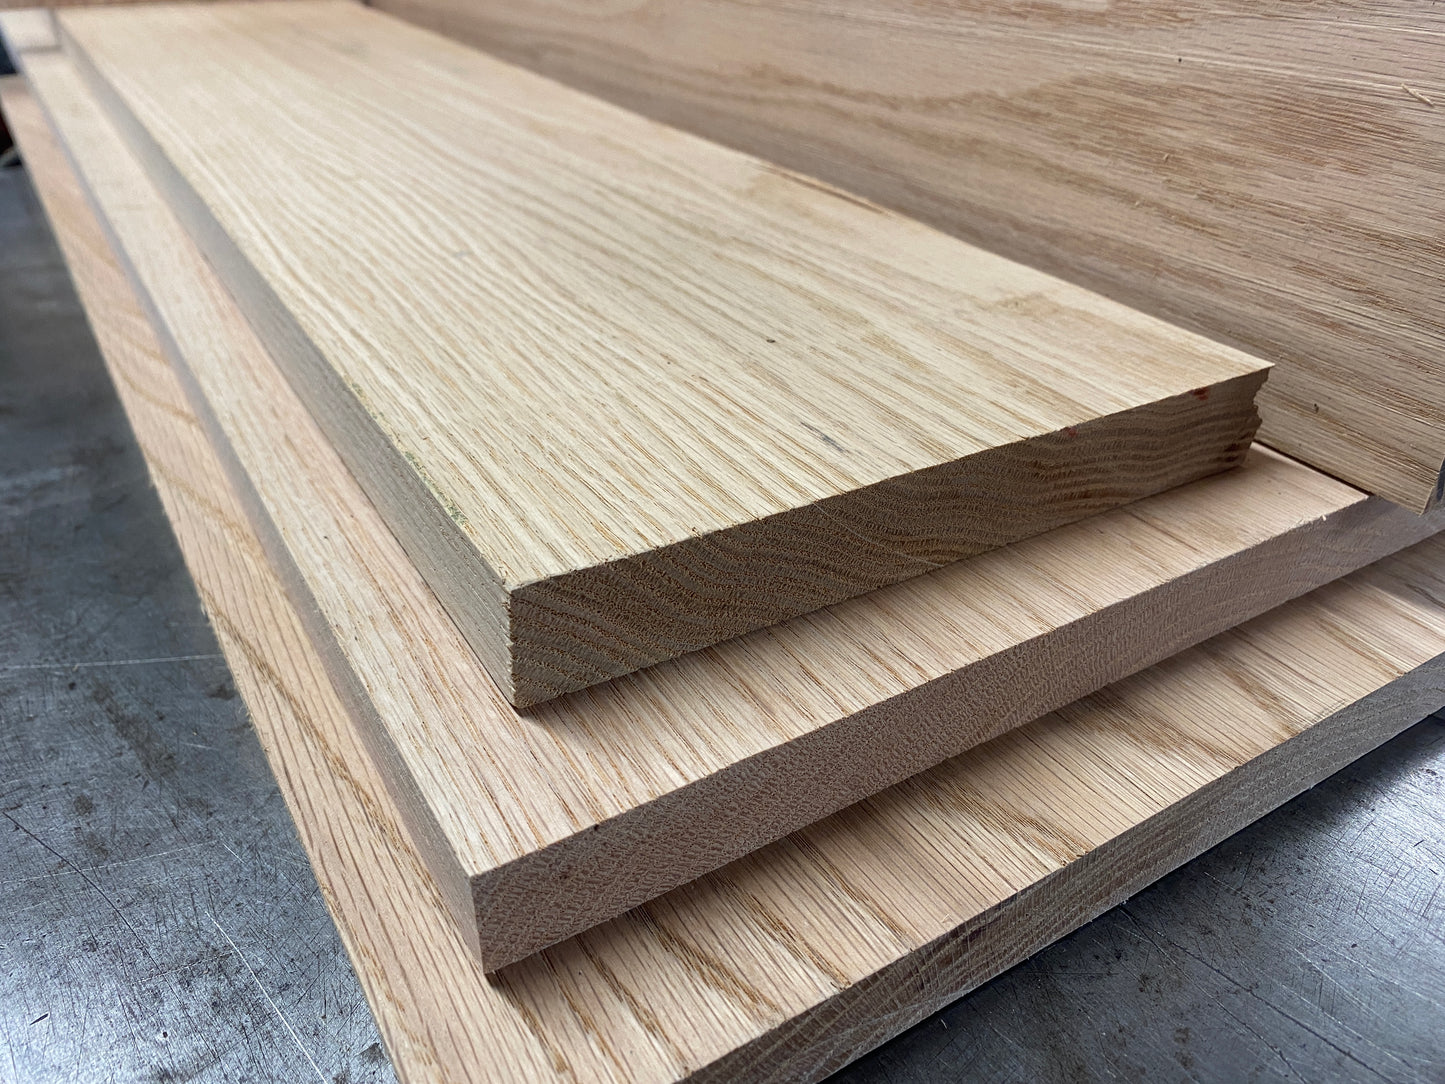 Character American Oak Boards / Oak Shelves / Oak Window Boards / Hardwood 22mm